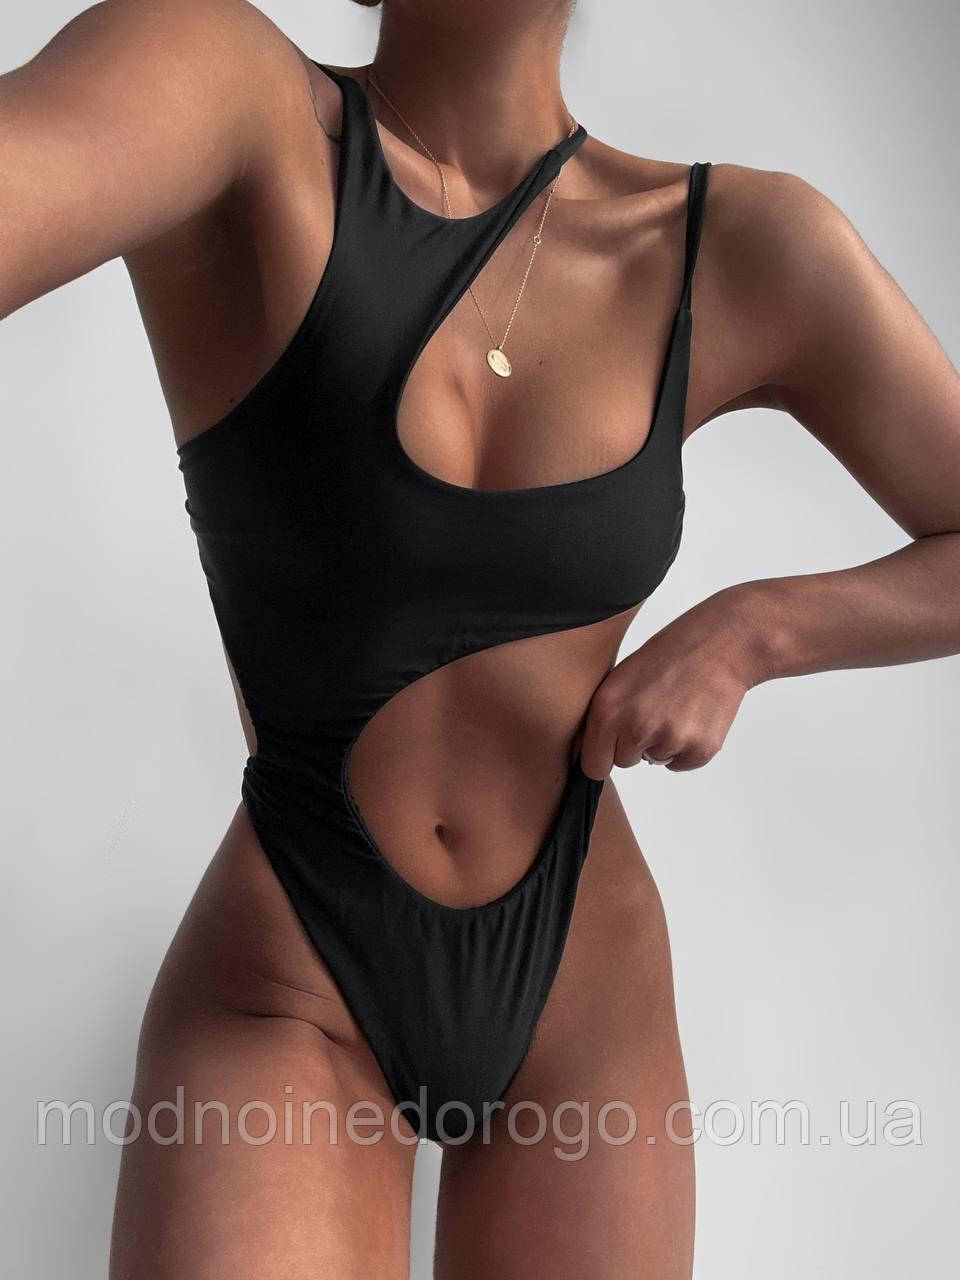 Жіночий чорний відкритий купальник з бікіні.Асиметричний купальник боді з відкритою талією і спиною